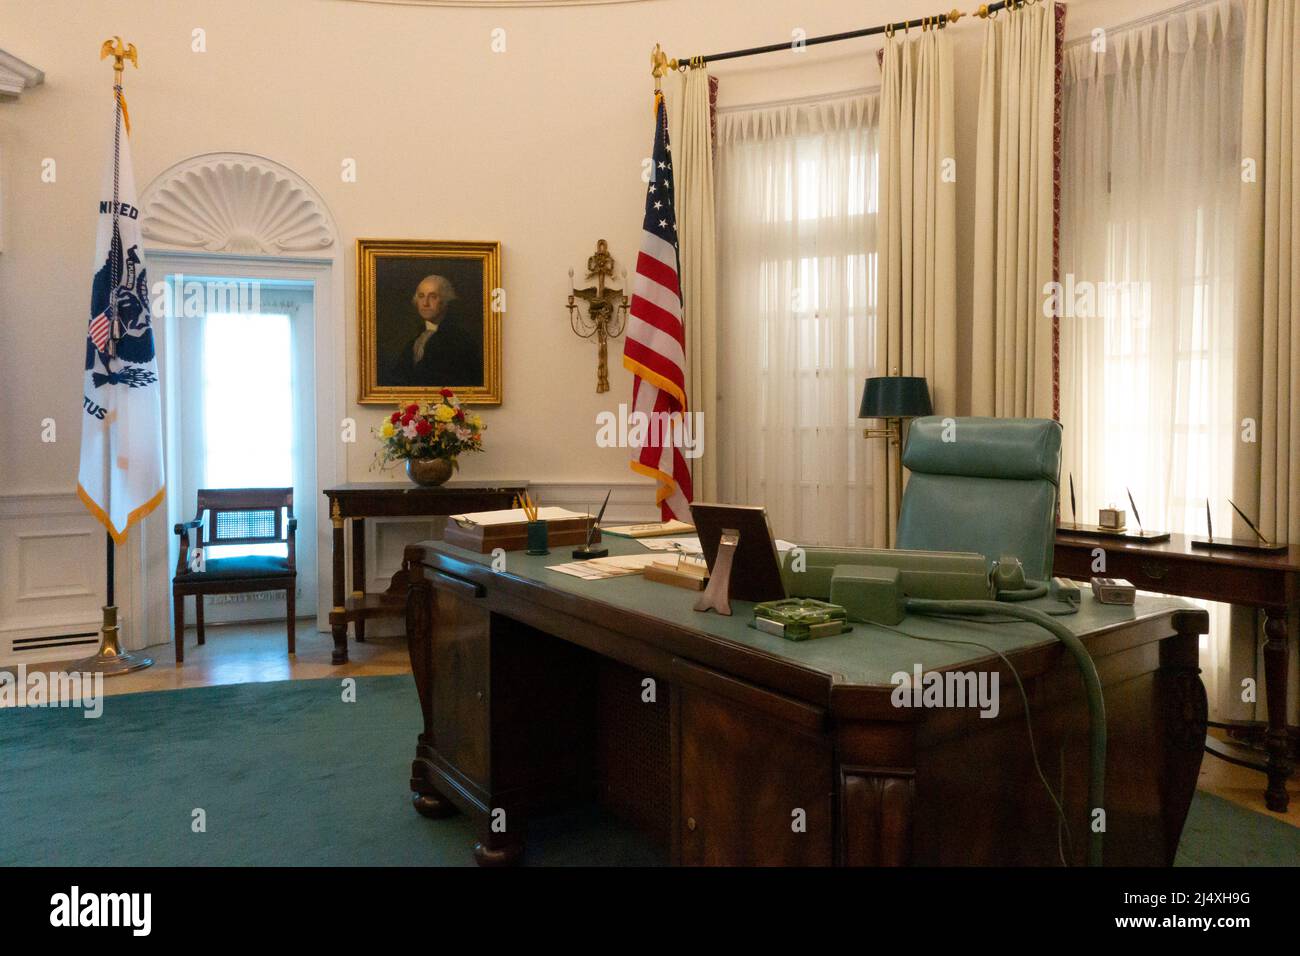 Texas Austin TX Lyndon Baines Johnson LBJ Presidential Library and Museum eine Nachbildung des Oval Office des Weißen Hauses während seiner Präsidentschaft Stockfoto